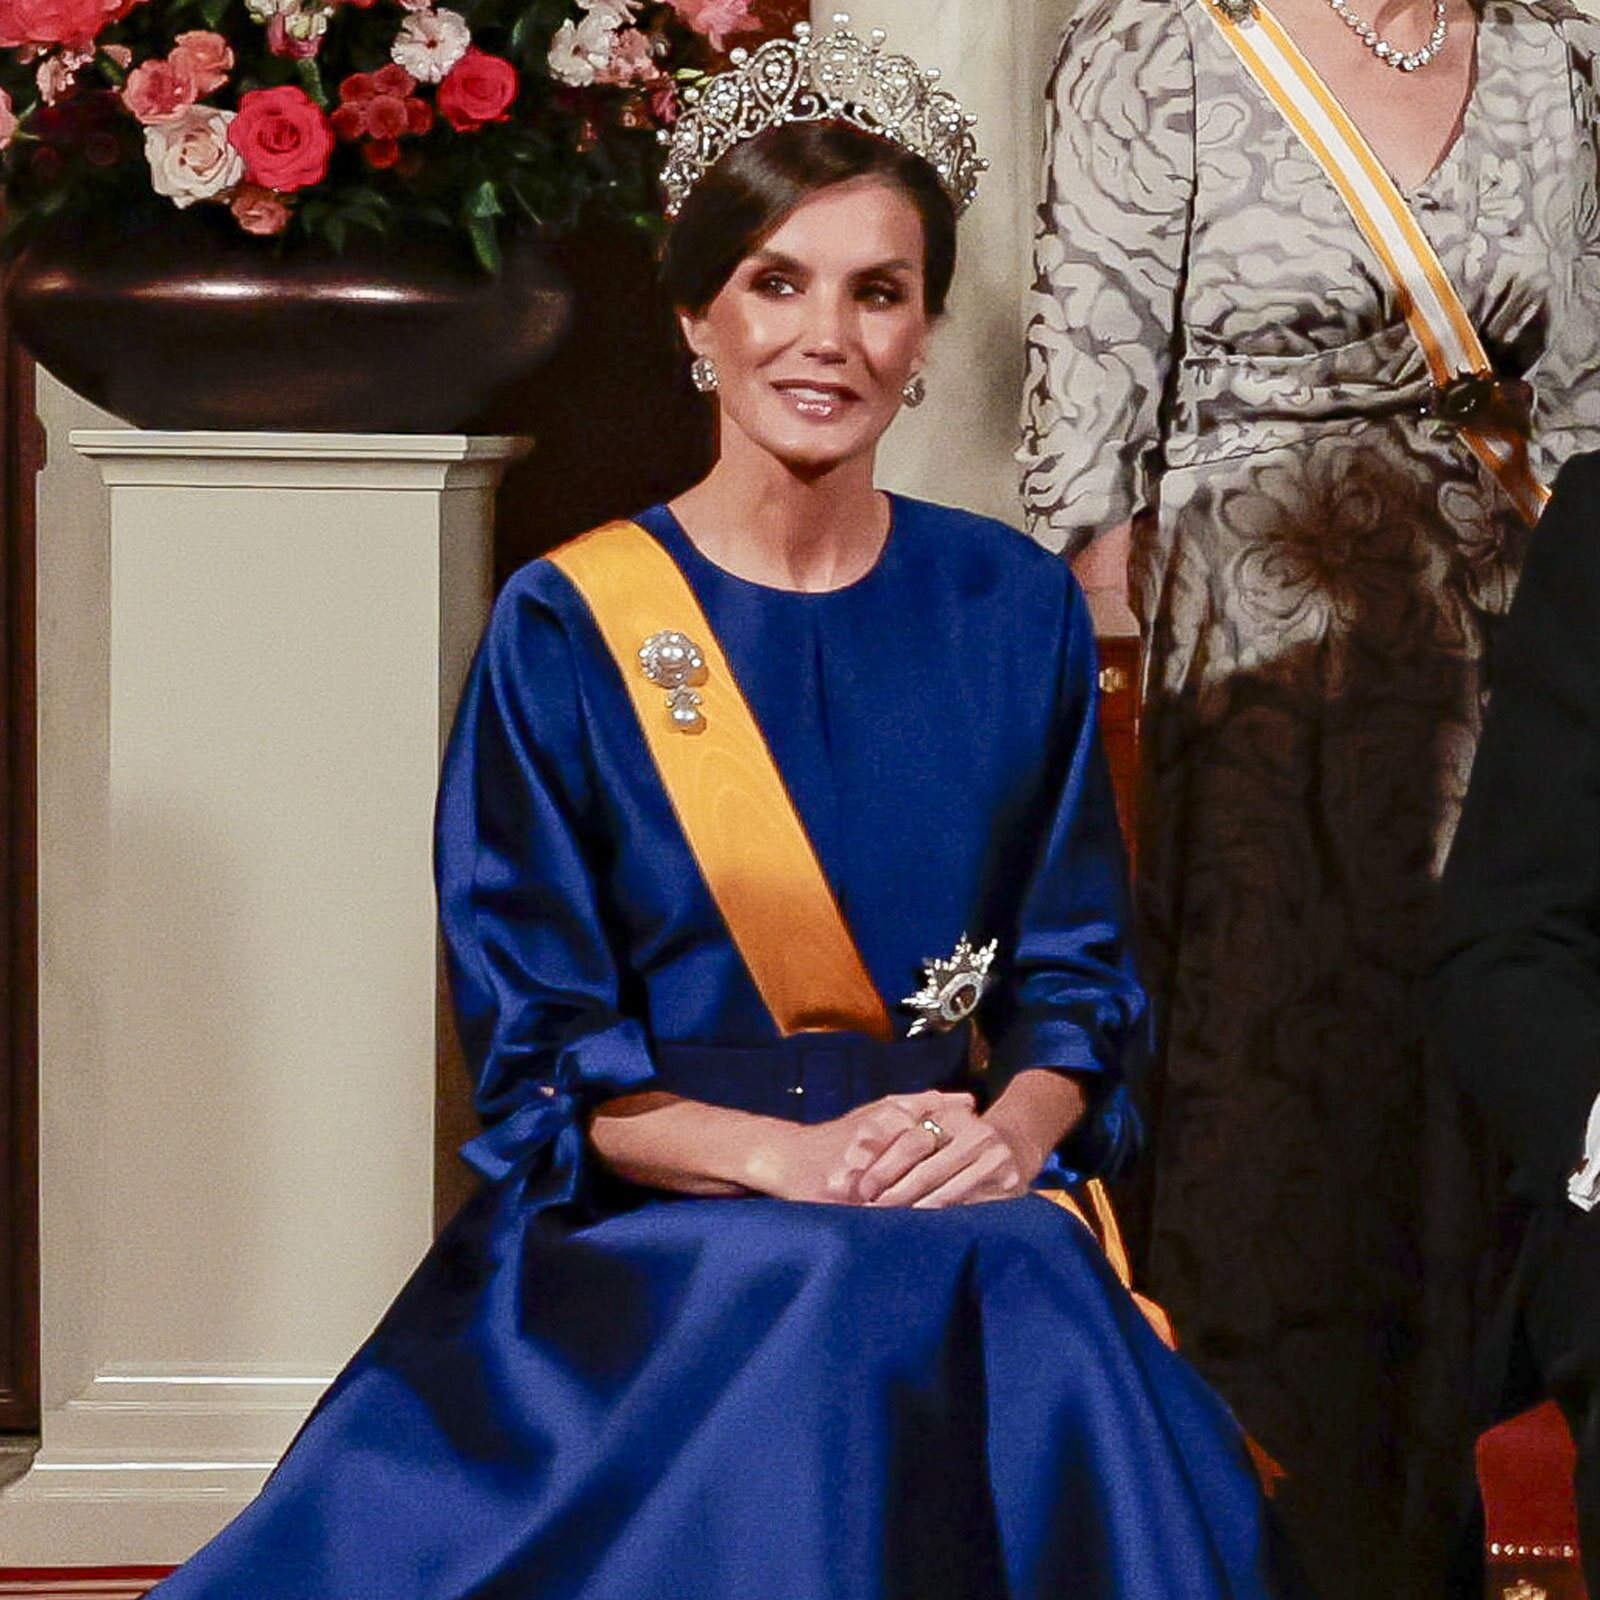 la reina letizia en la cena de gala en países bajos: la tiara rusa, joyas de pasar, besamanos sentada y condecoración menor